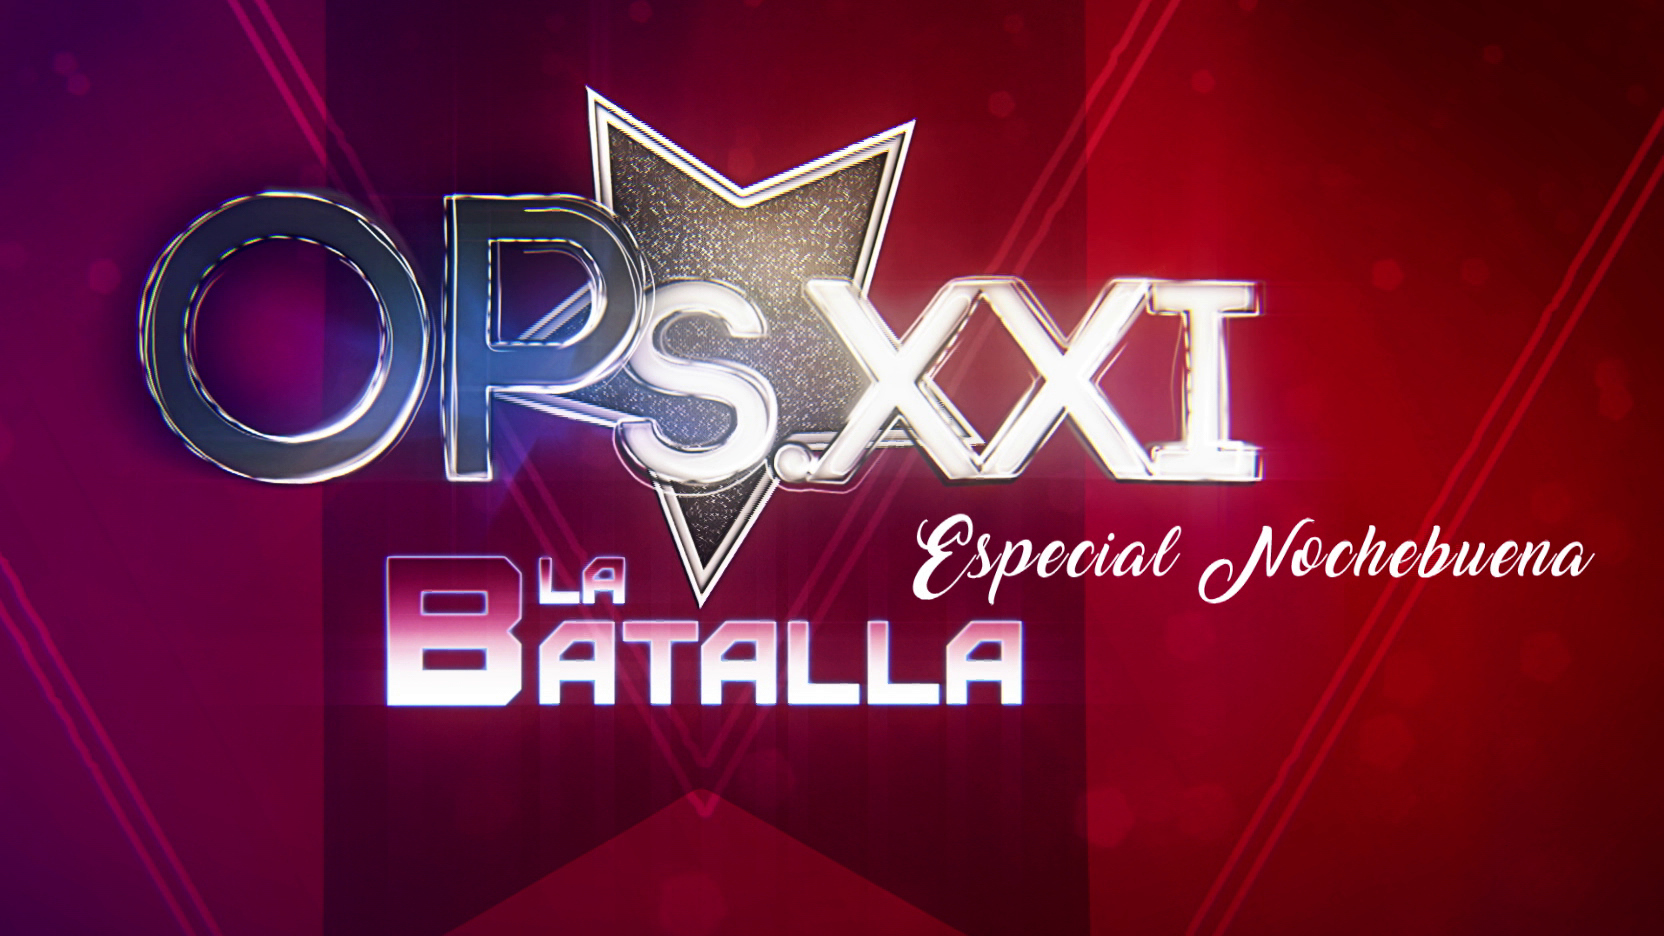 La Batalla de OPSXXI Especial Nochebuena (Jueves, 24-12-2020)